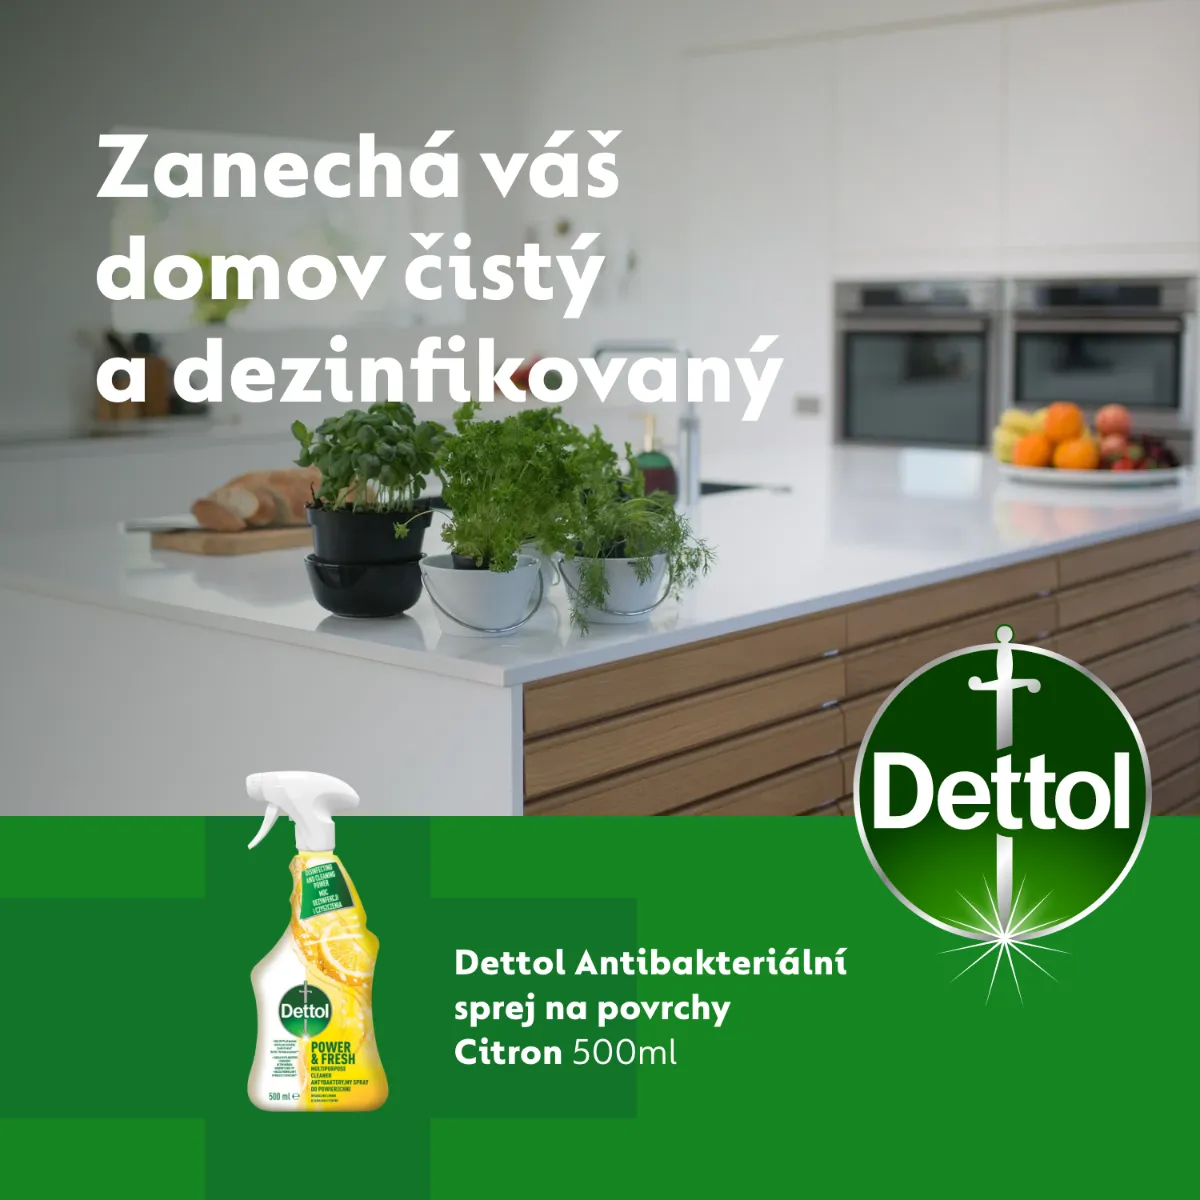 Dettol Power&Fresh Antibakteriálni sprej na povrchy Citrón a limeta 500 ml